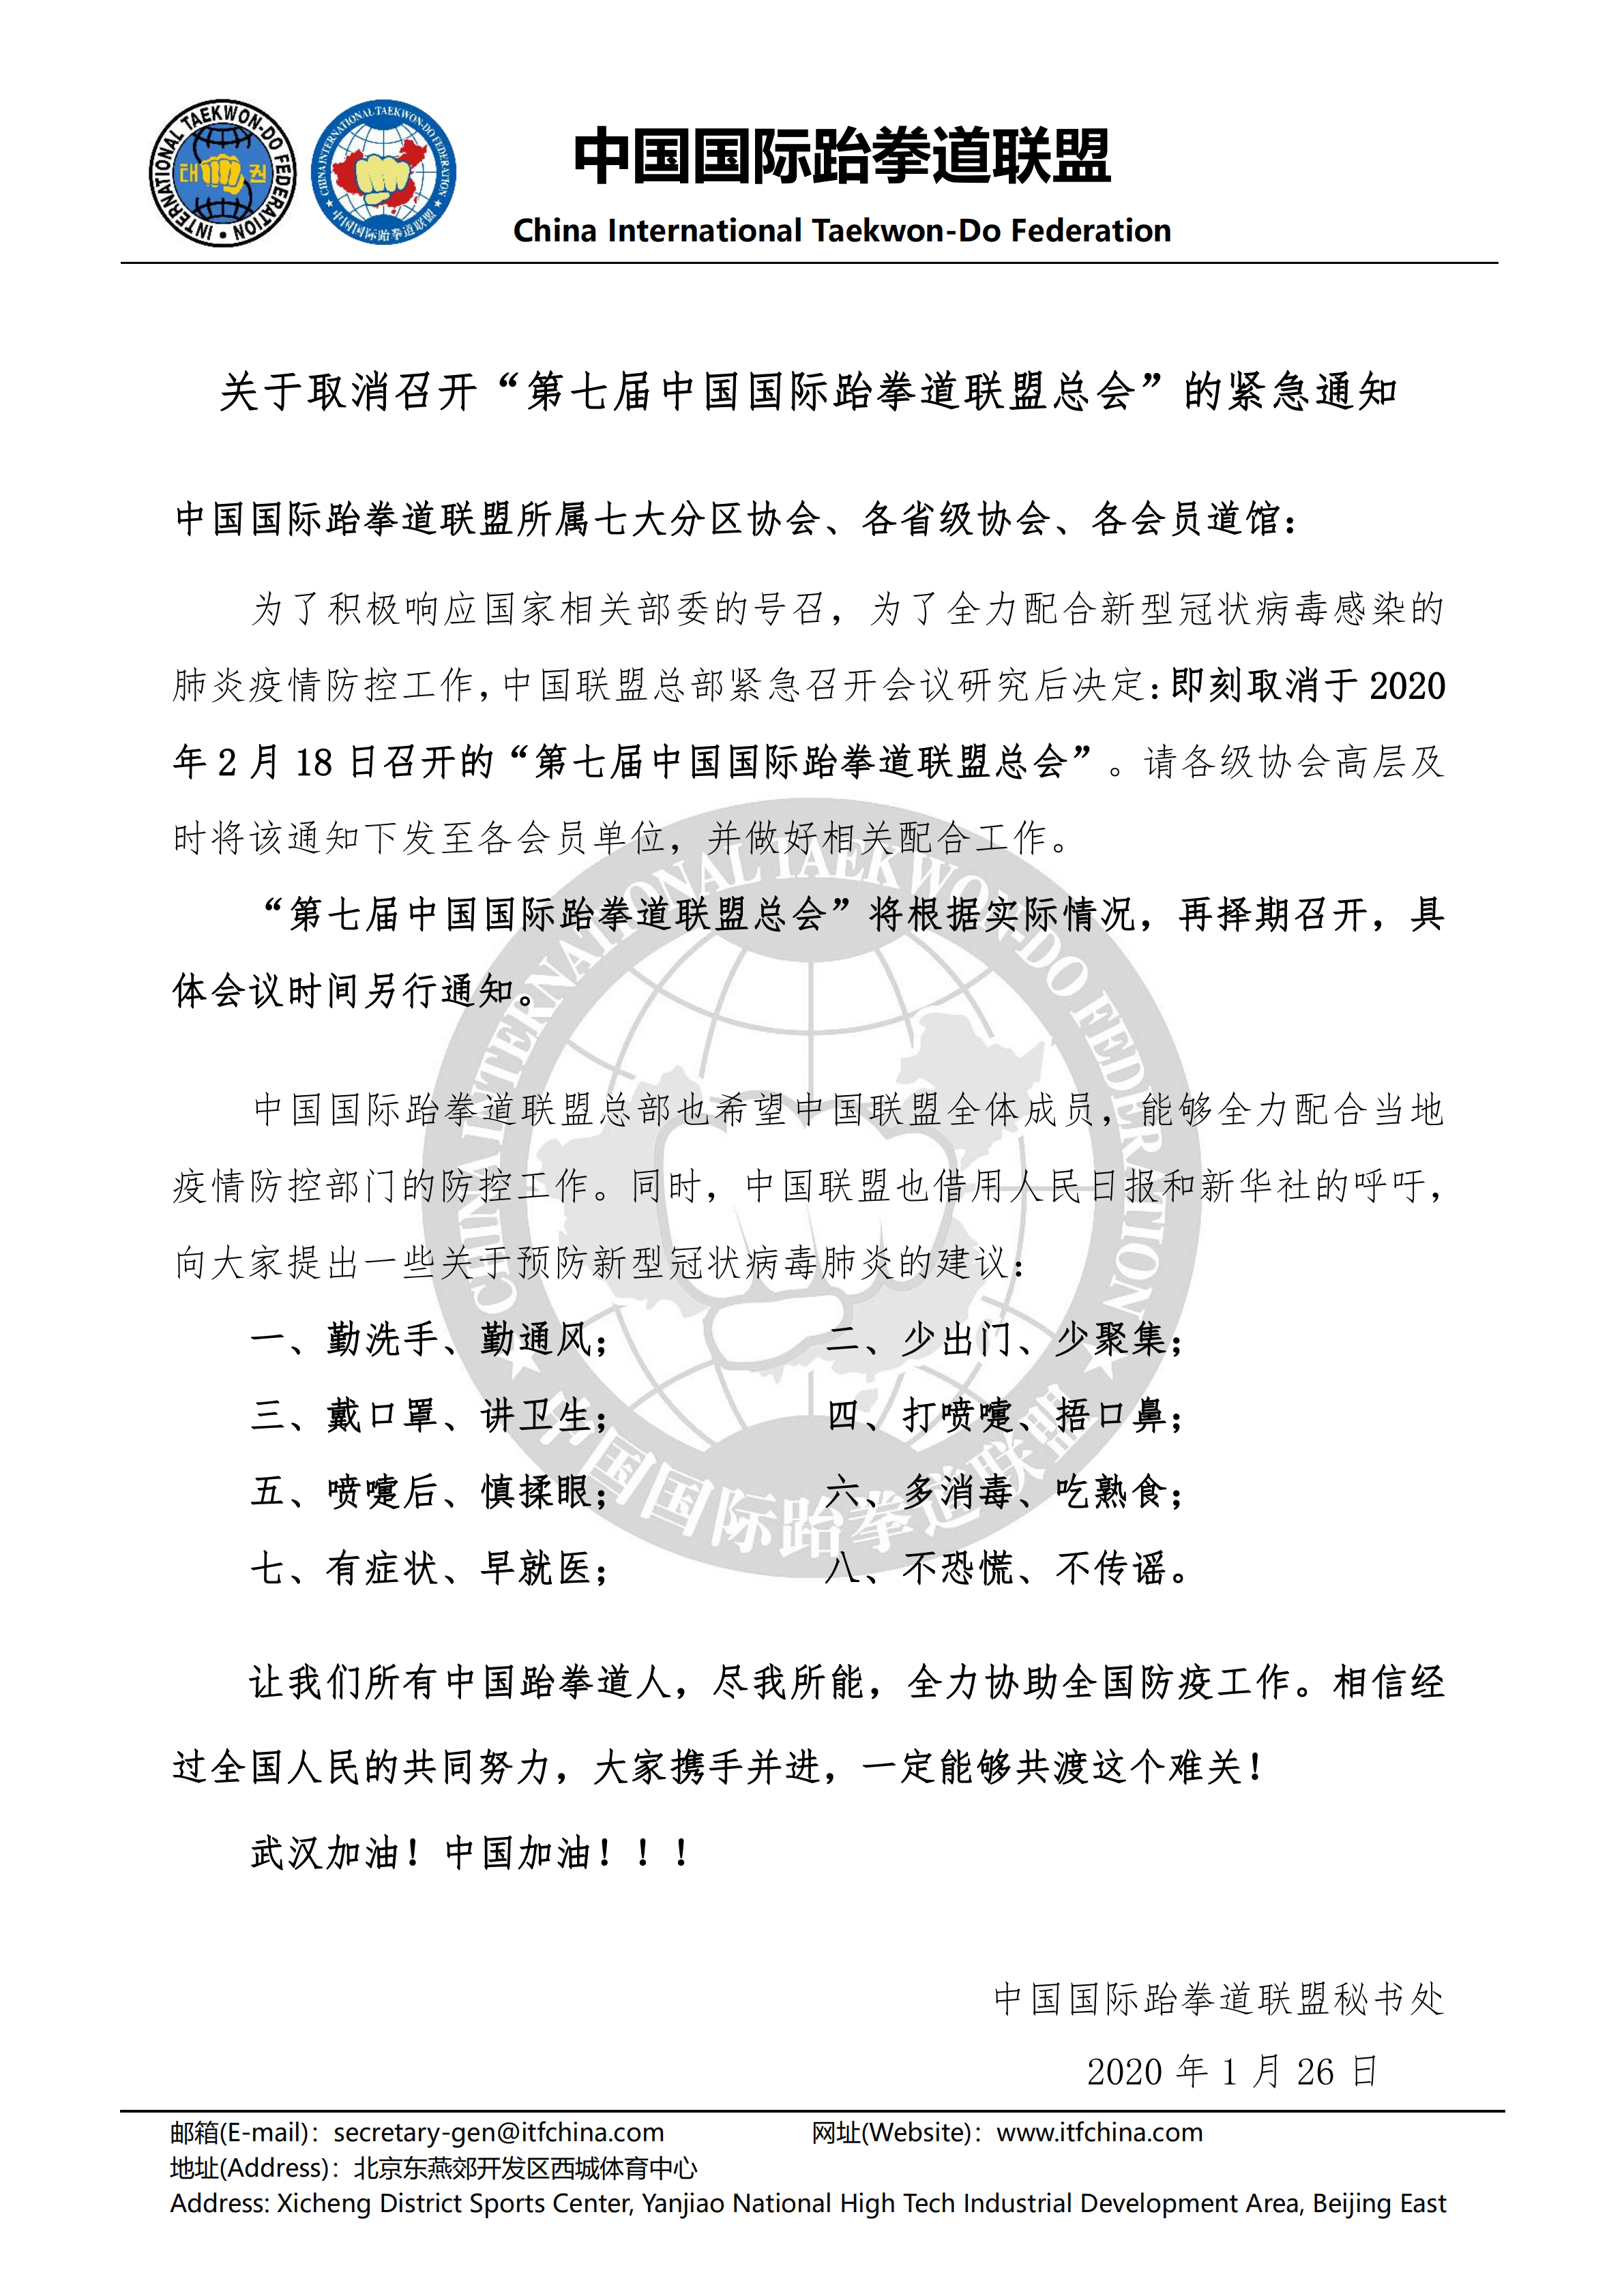 关于取消召开第七届中国联盟总会的紧急通知_00.png